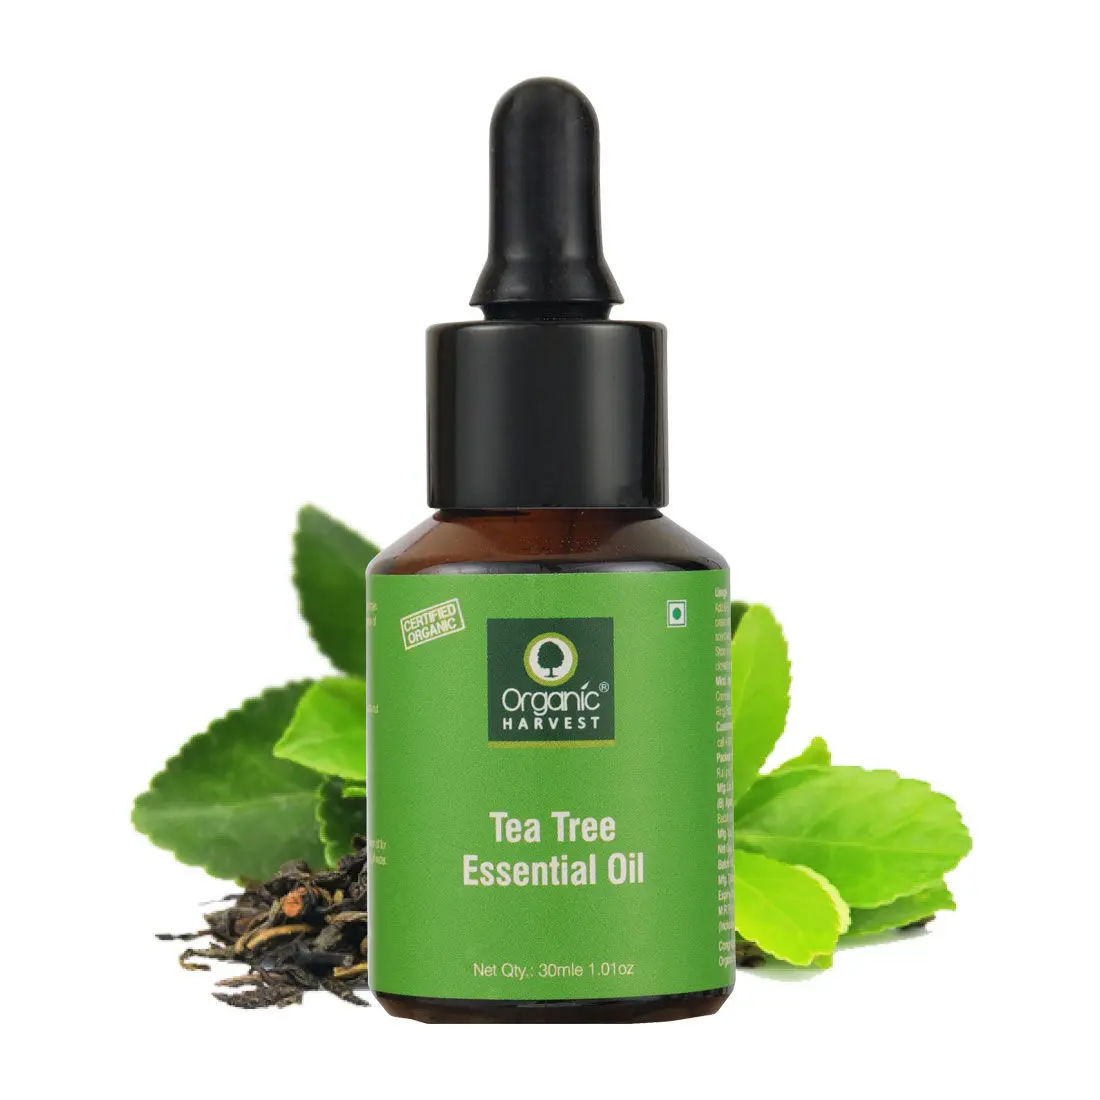 Organic Harvest Tea Tree Essential Oil, (30 ml)